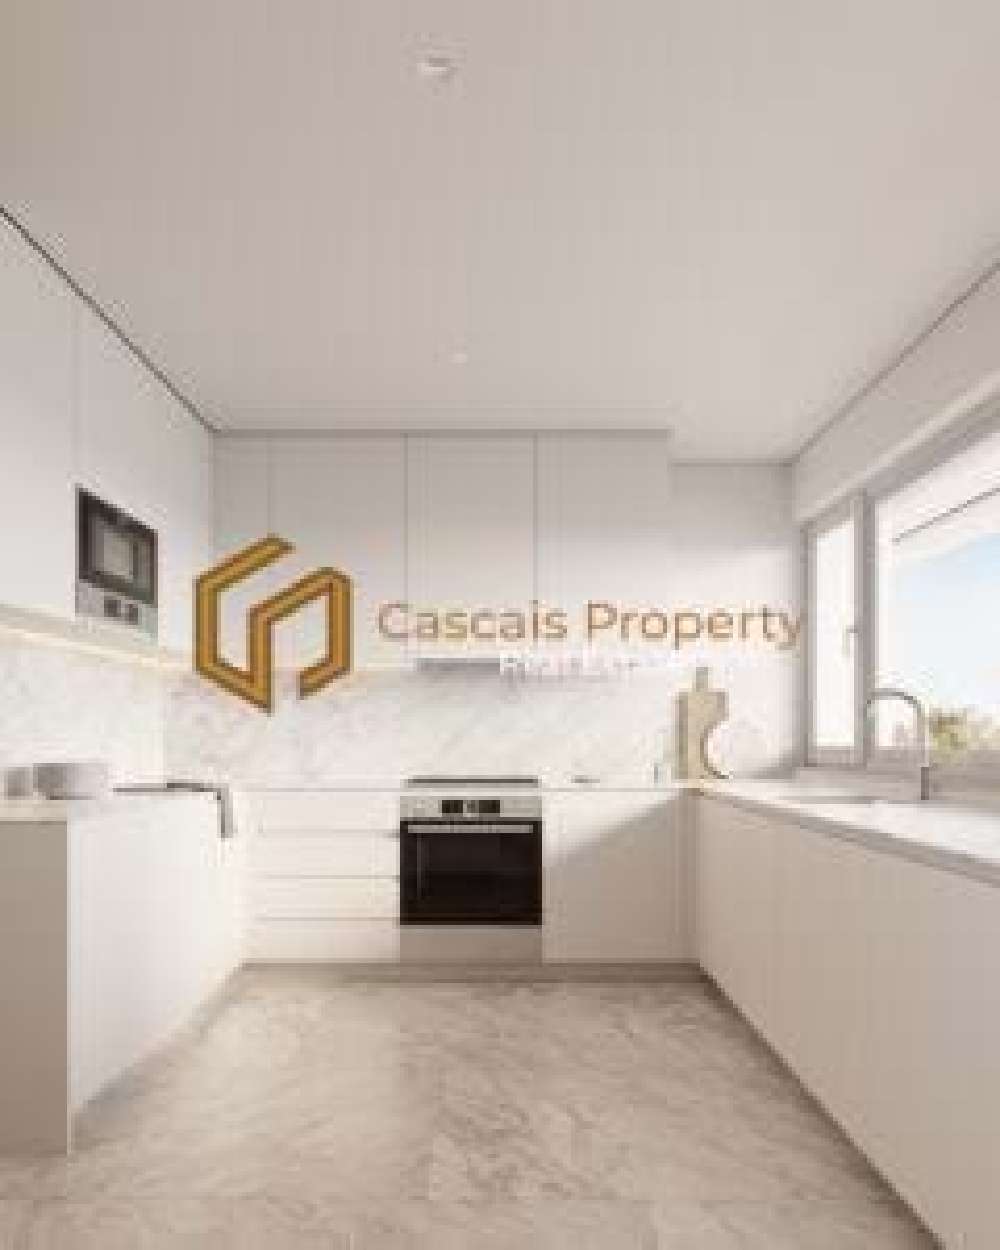  出售 公寓  Cascais  Cascais 8